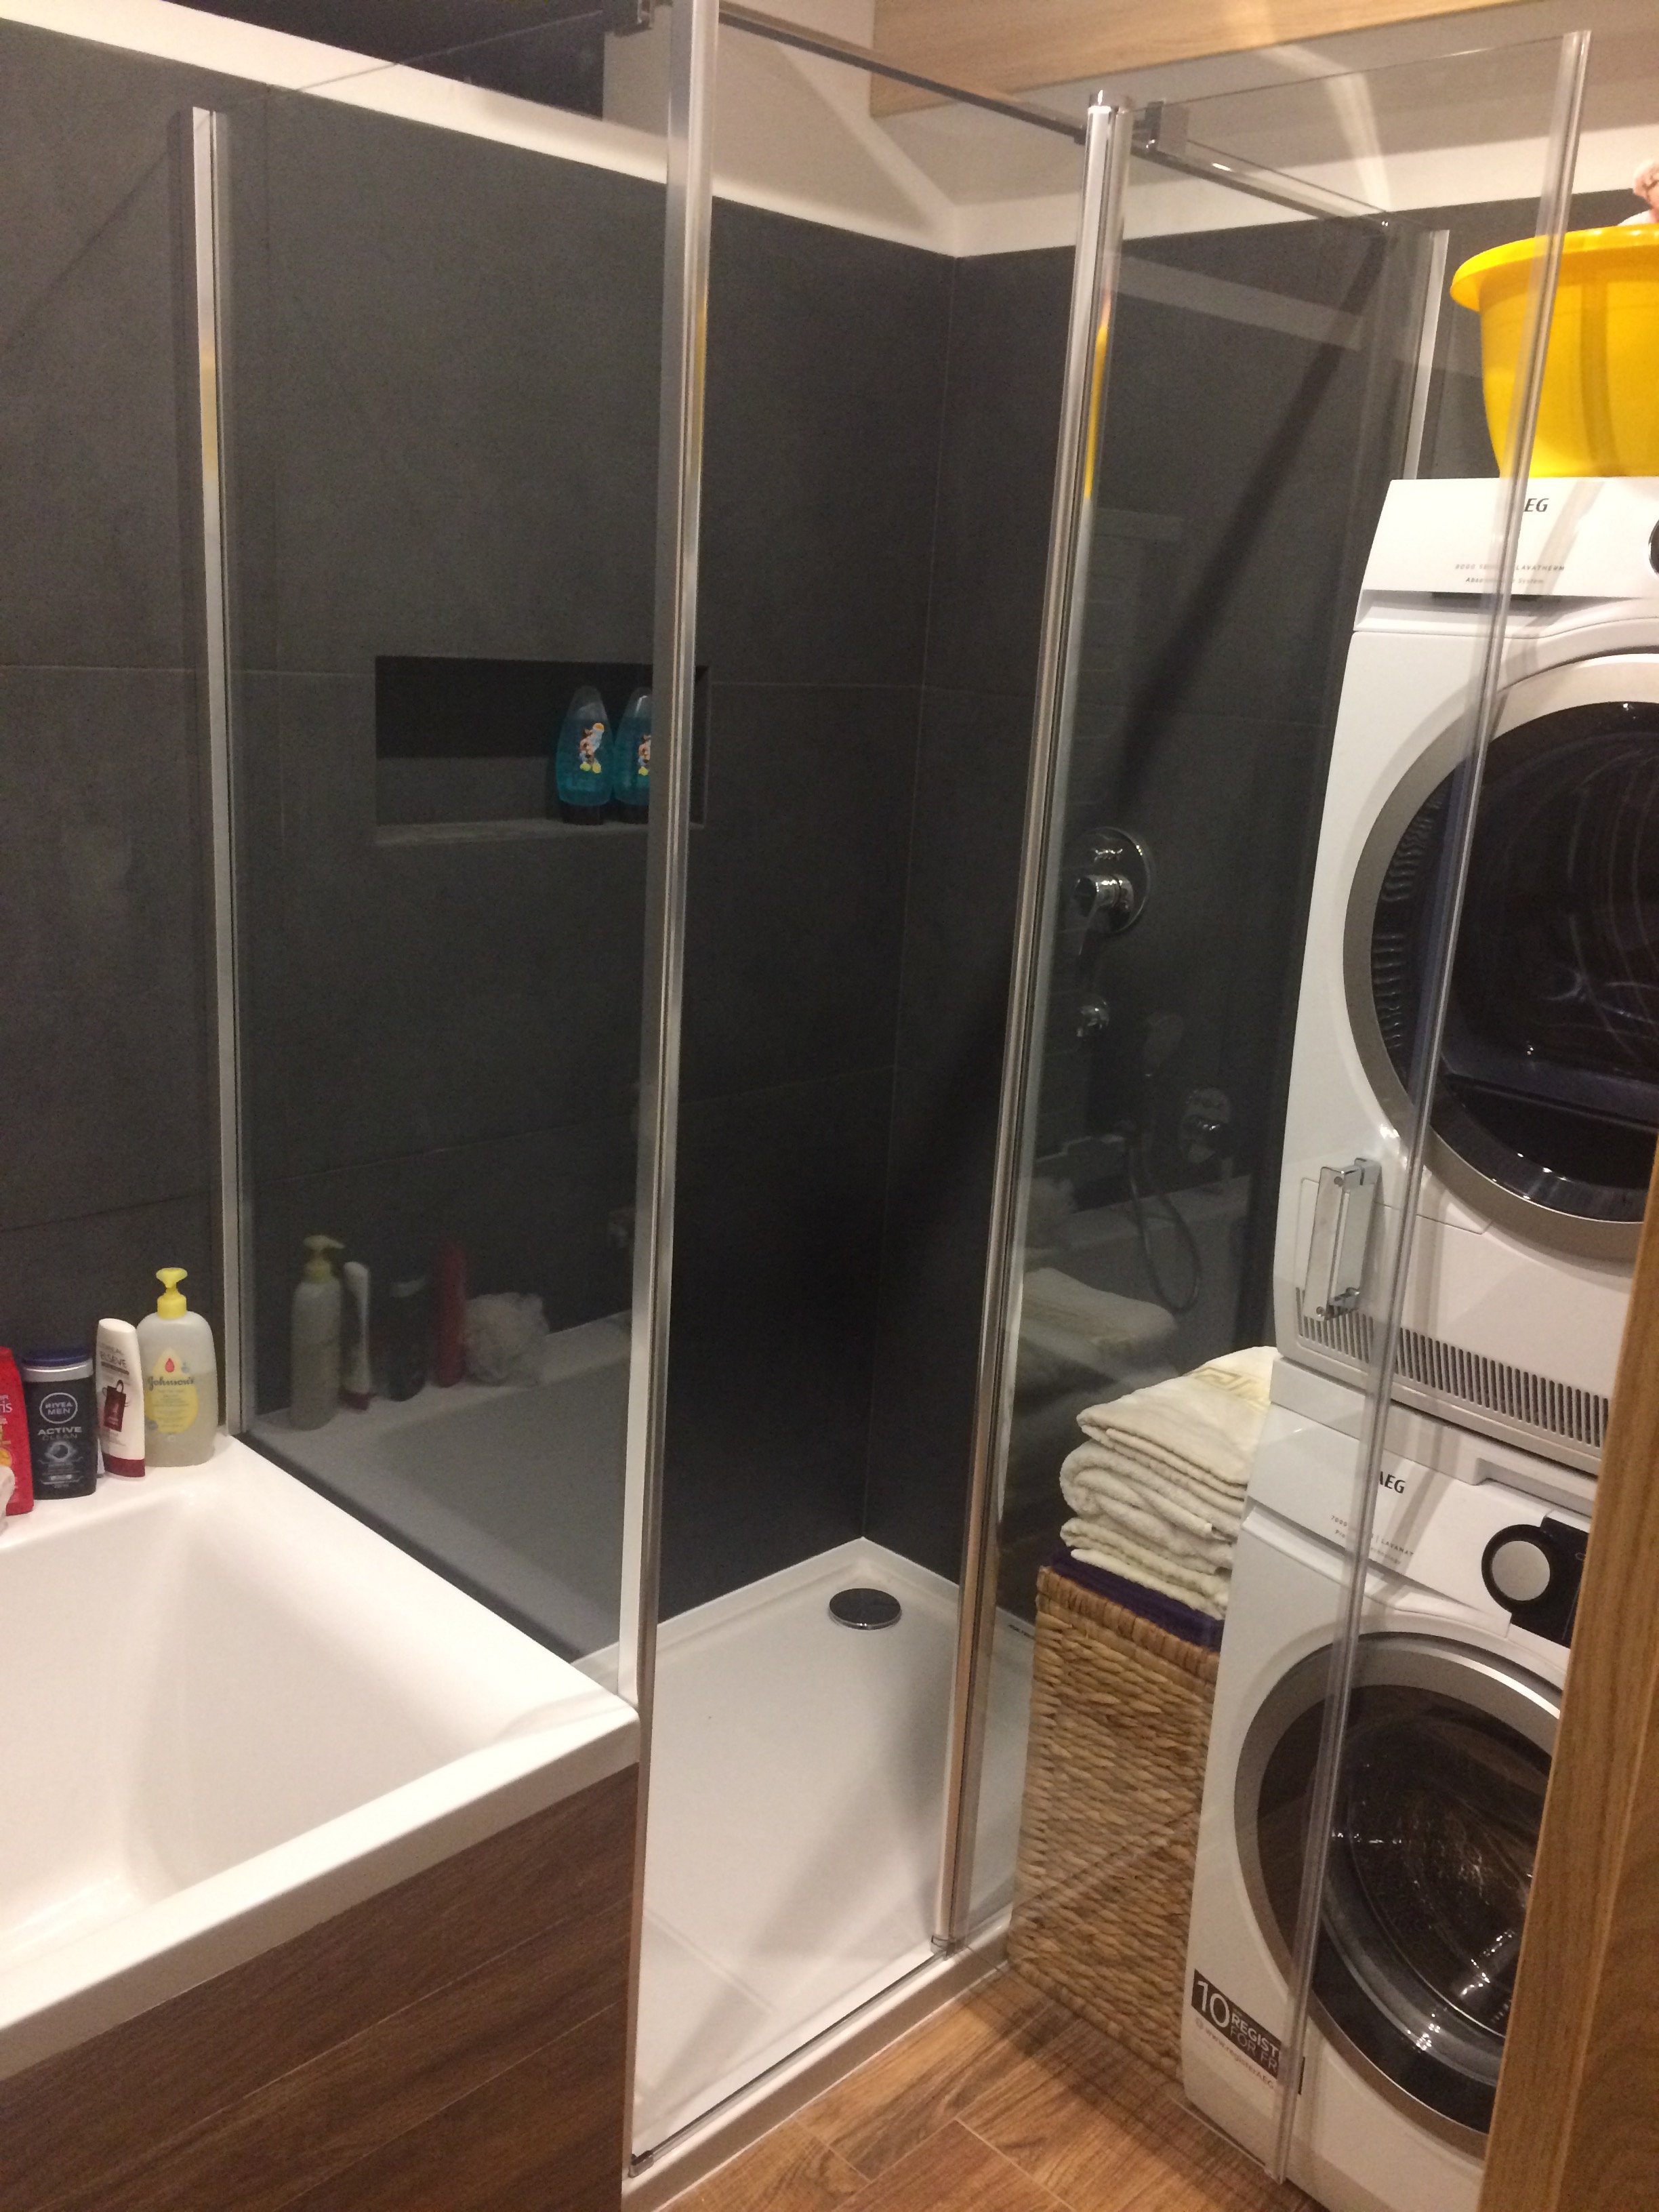 Sprchový kout s ořezem skla podél vany - ukázka úspory místa